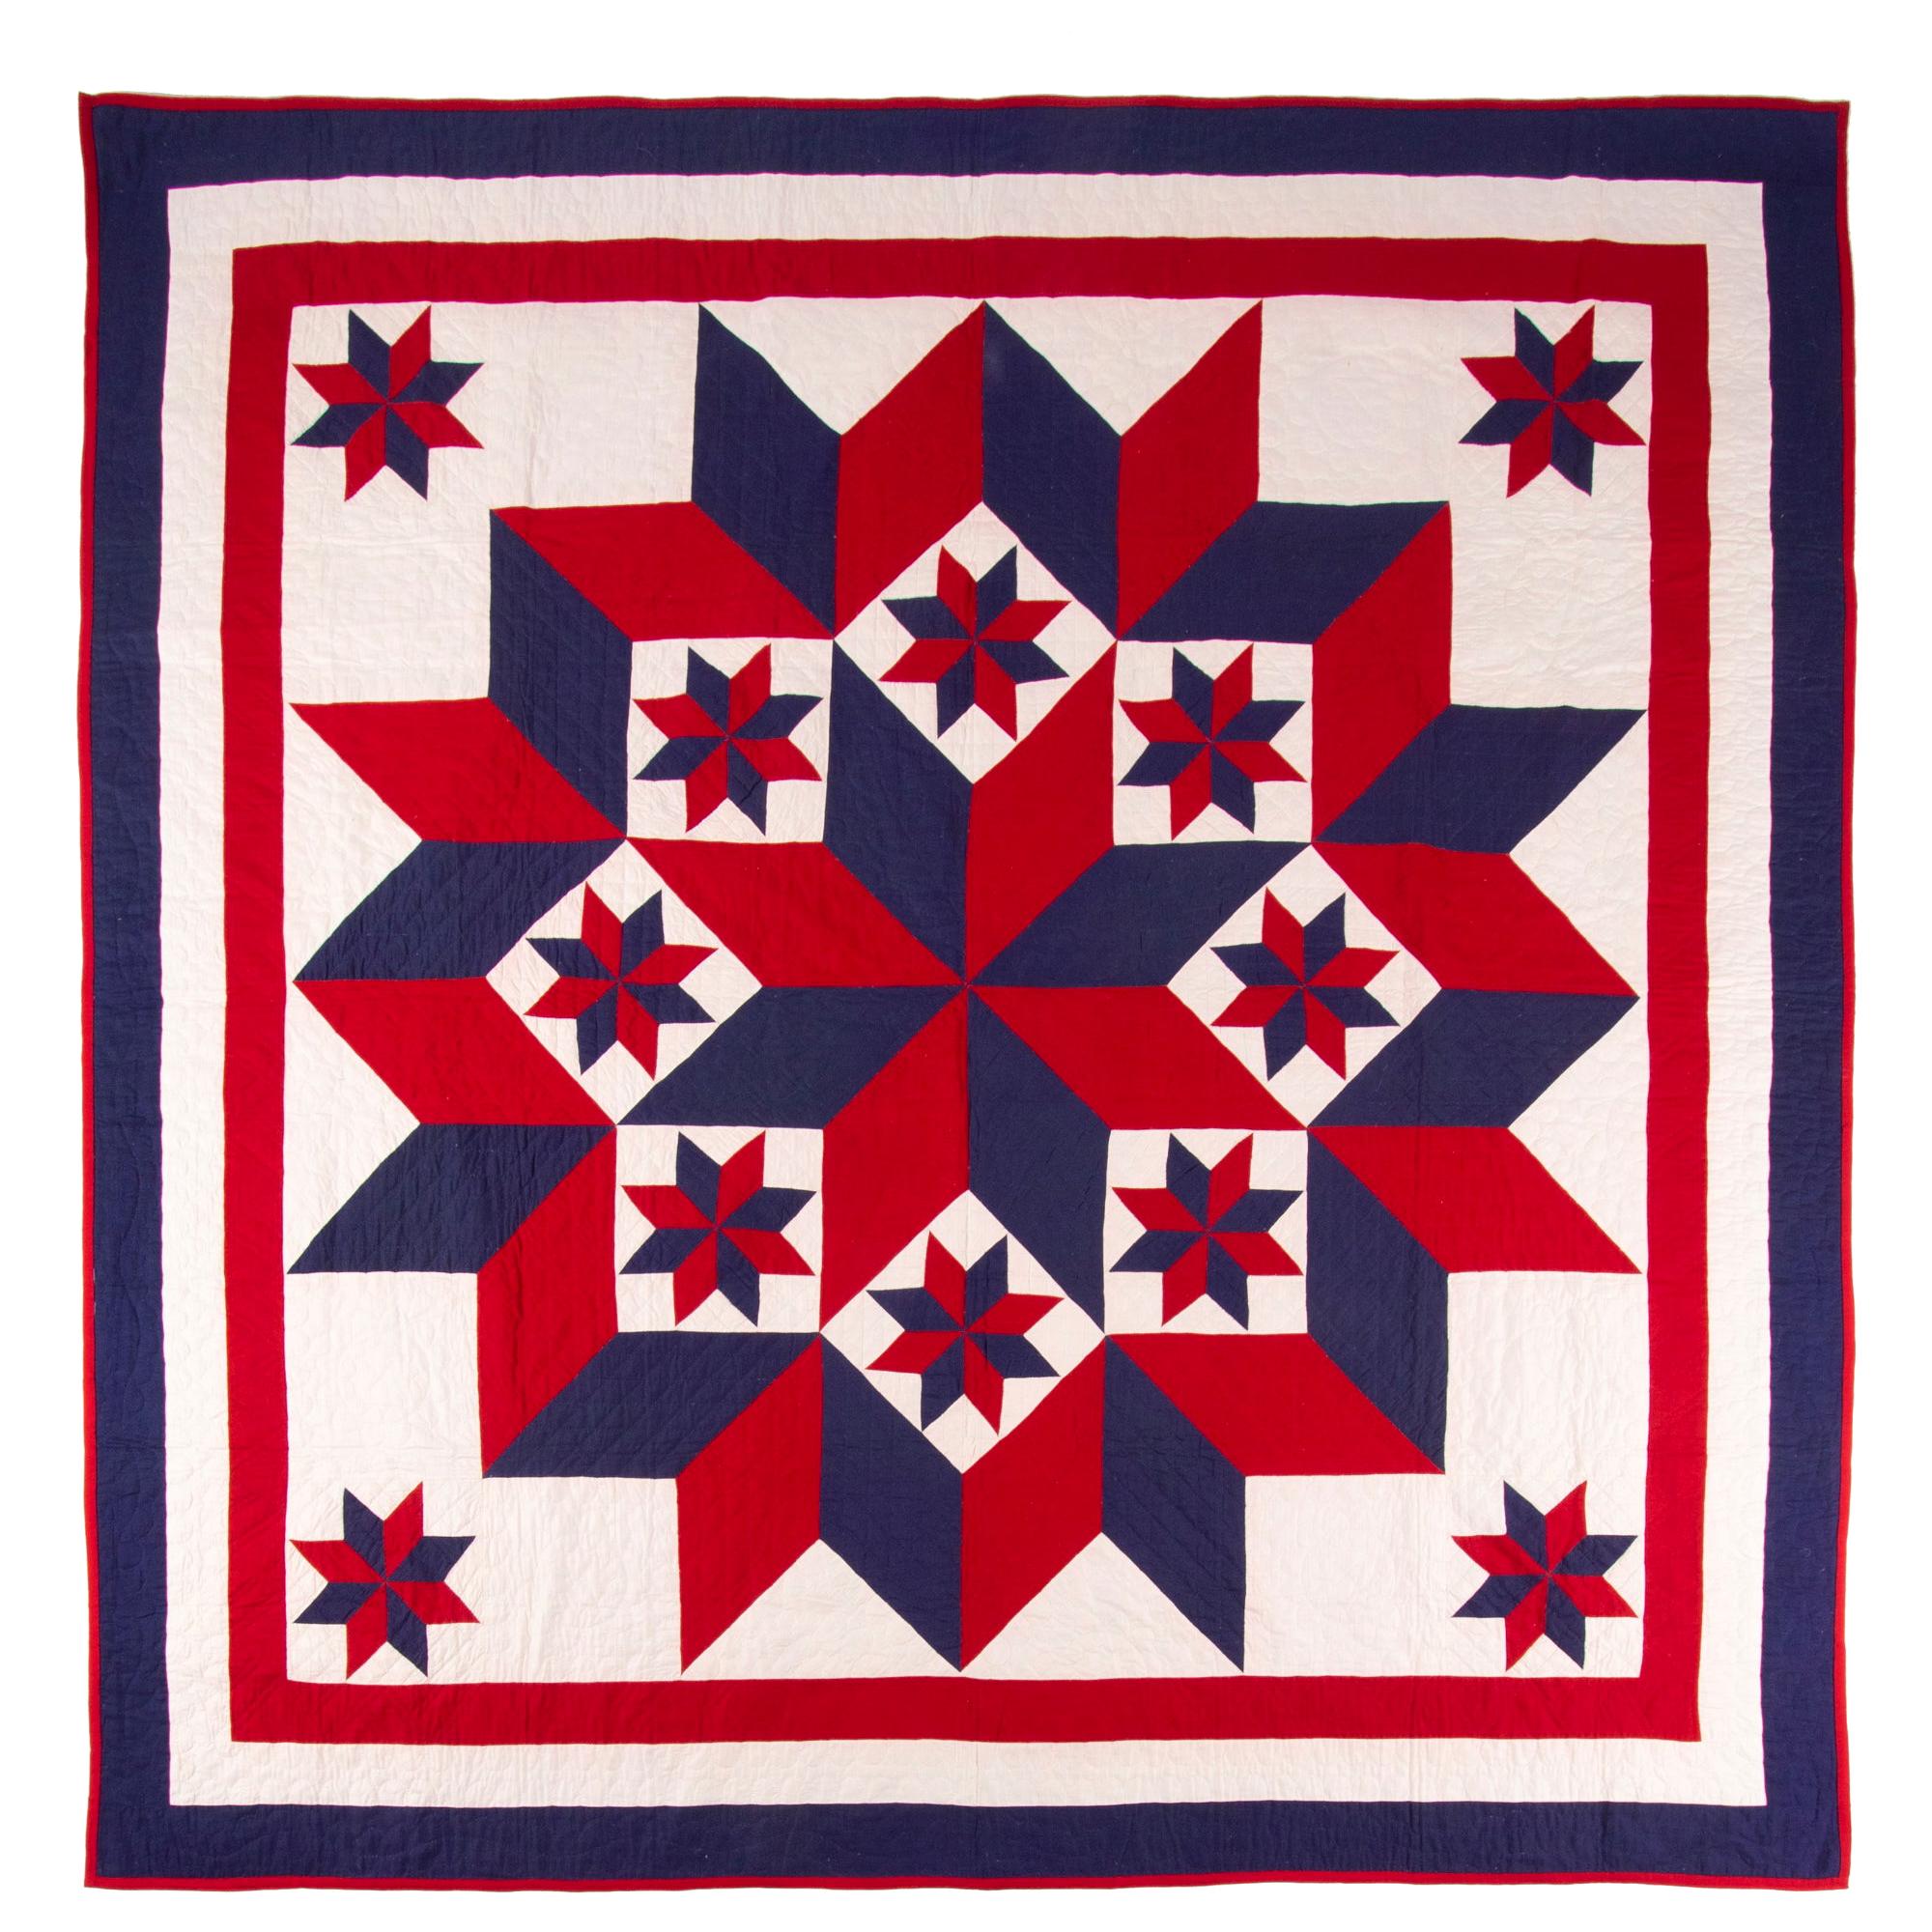 American Broken Star Pattern Quilt, Lancaster County Pennsylvania